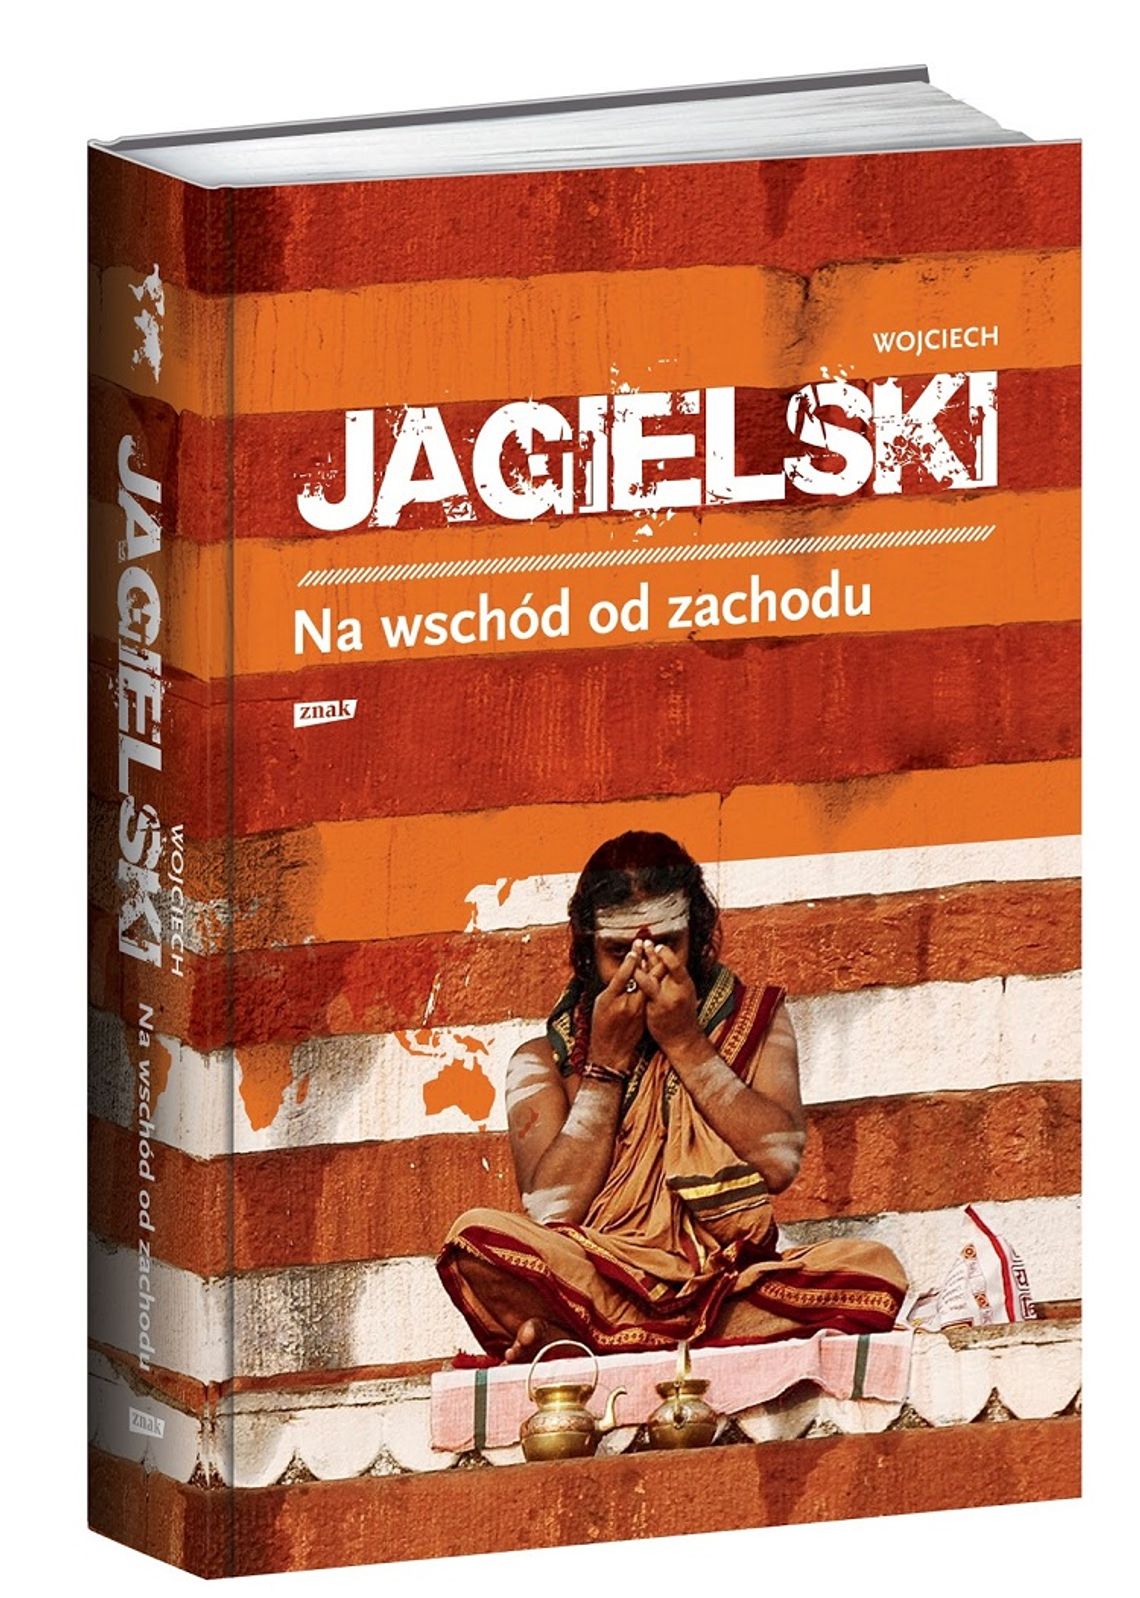 Wojciech Jagielski "Na wschód od zachodu:, wyd. Znak